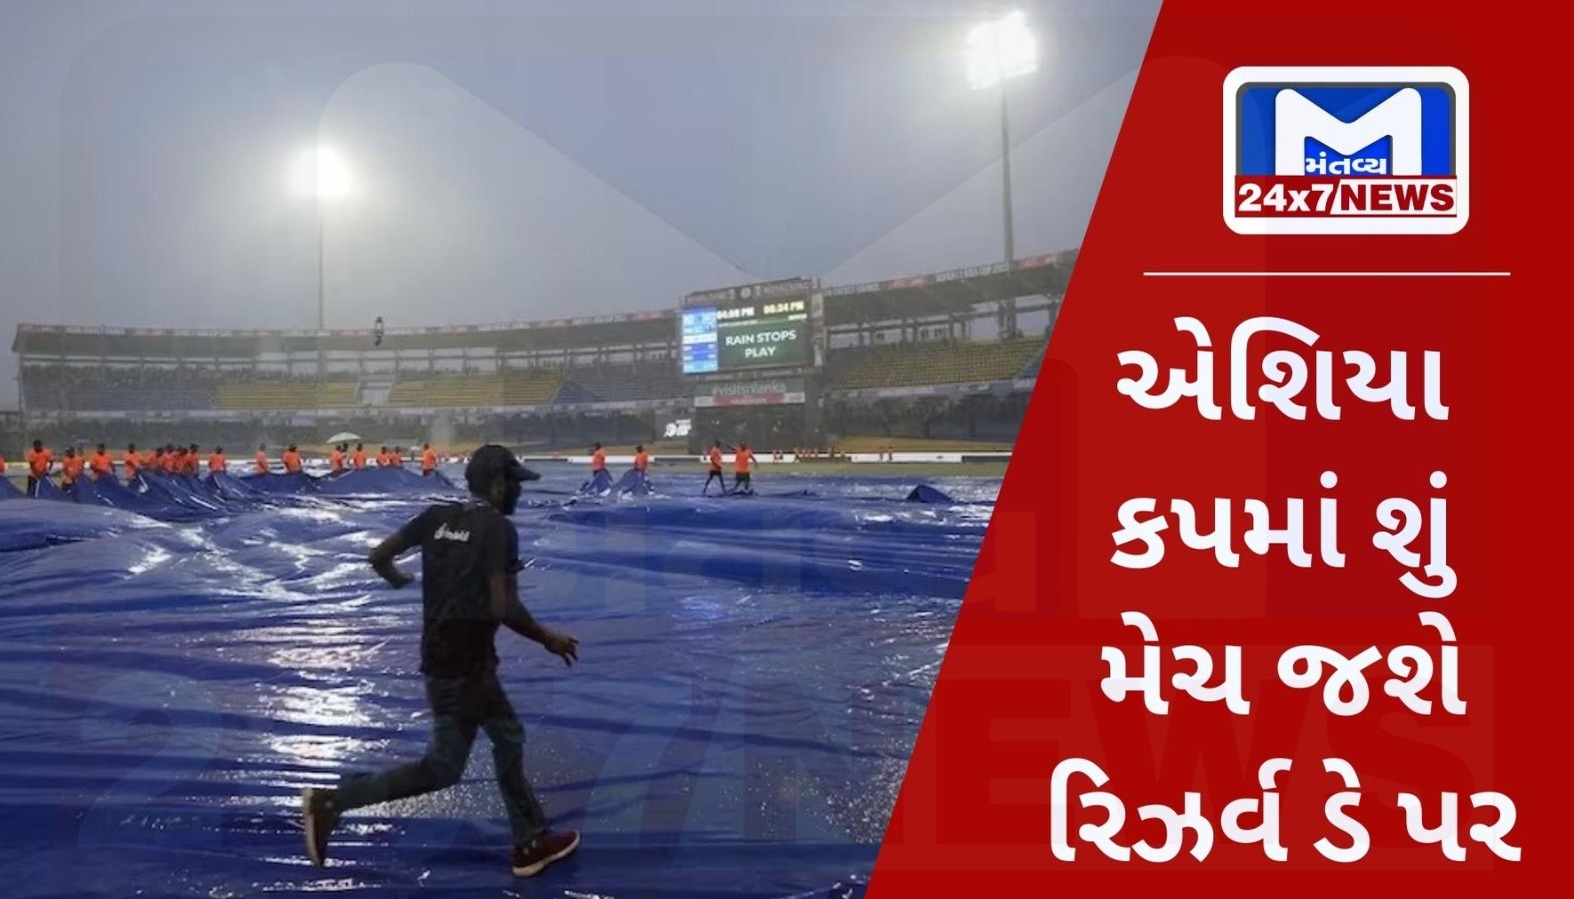 Asia Cup Reserveday એશિયા કપઃ ભારત-પાક મેચ ડે રિઝર્વ ડે પર, અટકી ત્યાંથી રમાશે